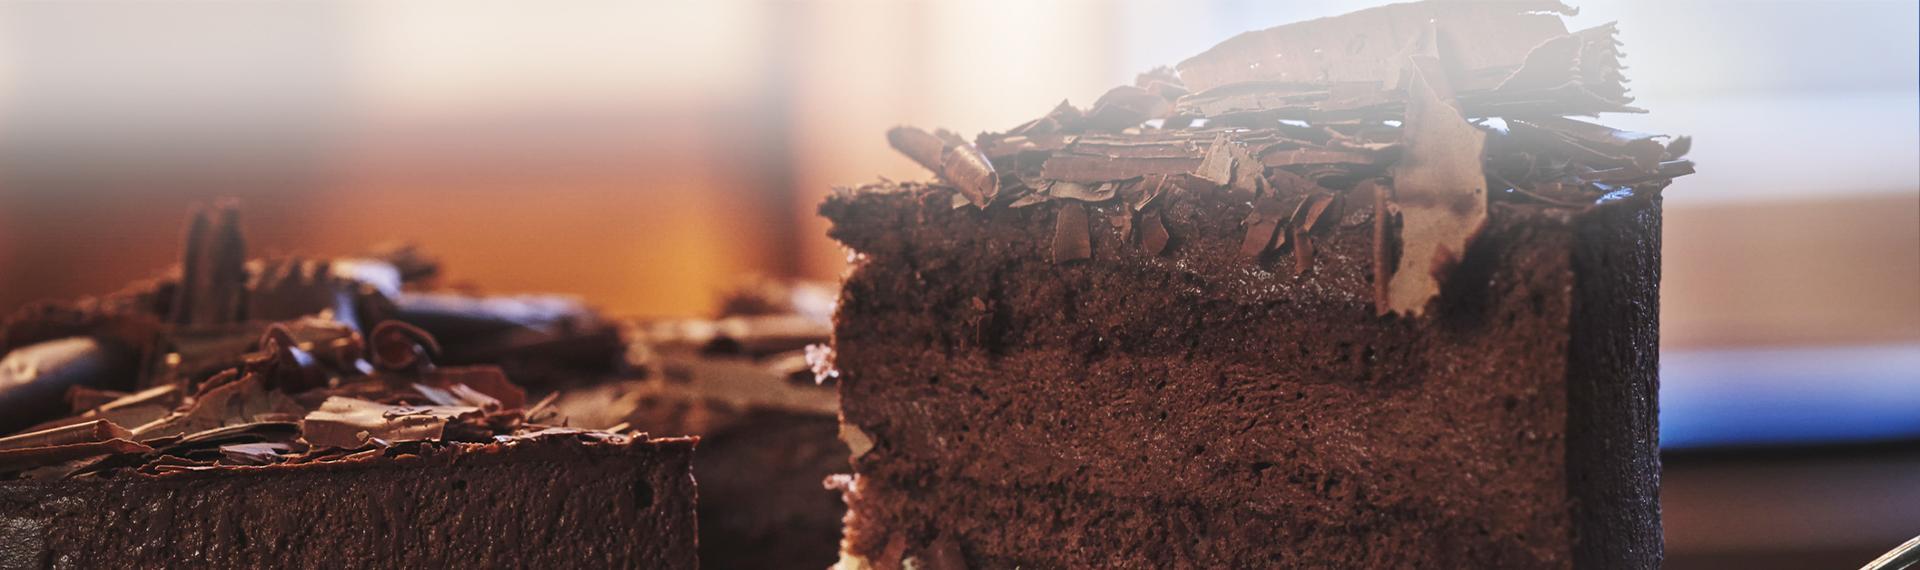 Slajd 1 tort czekoladowy